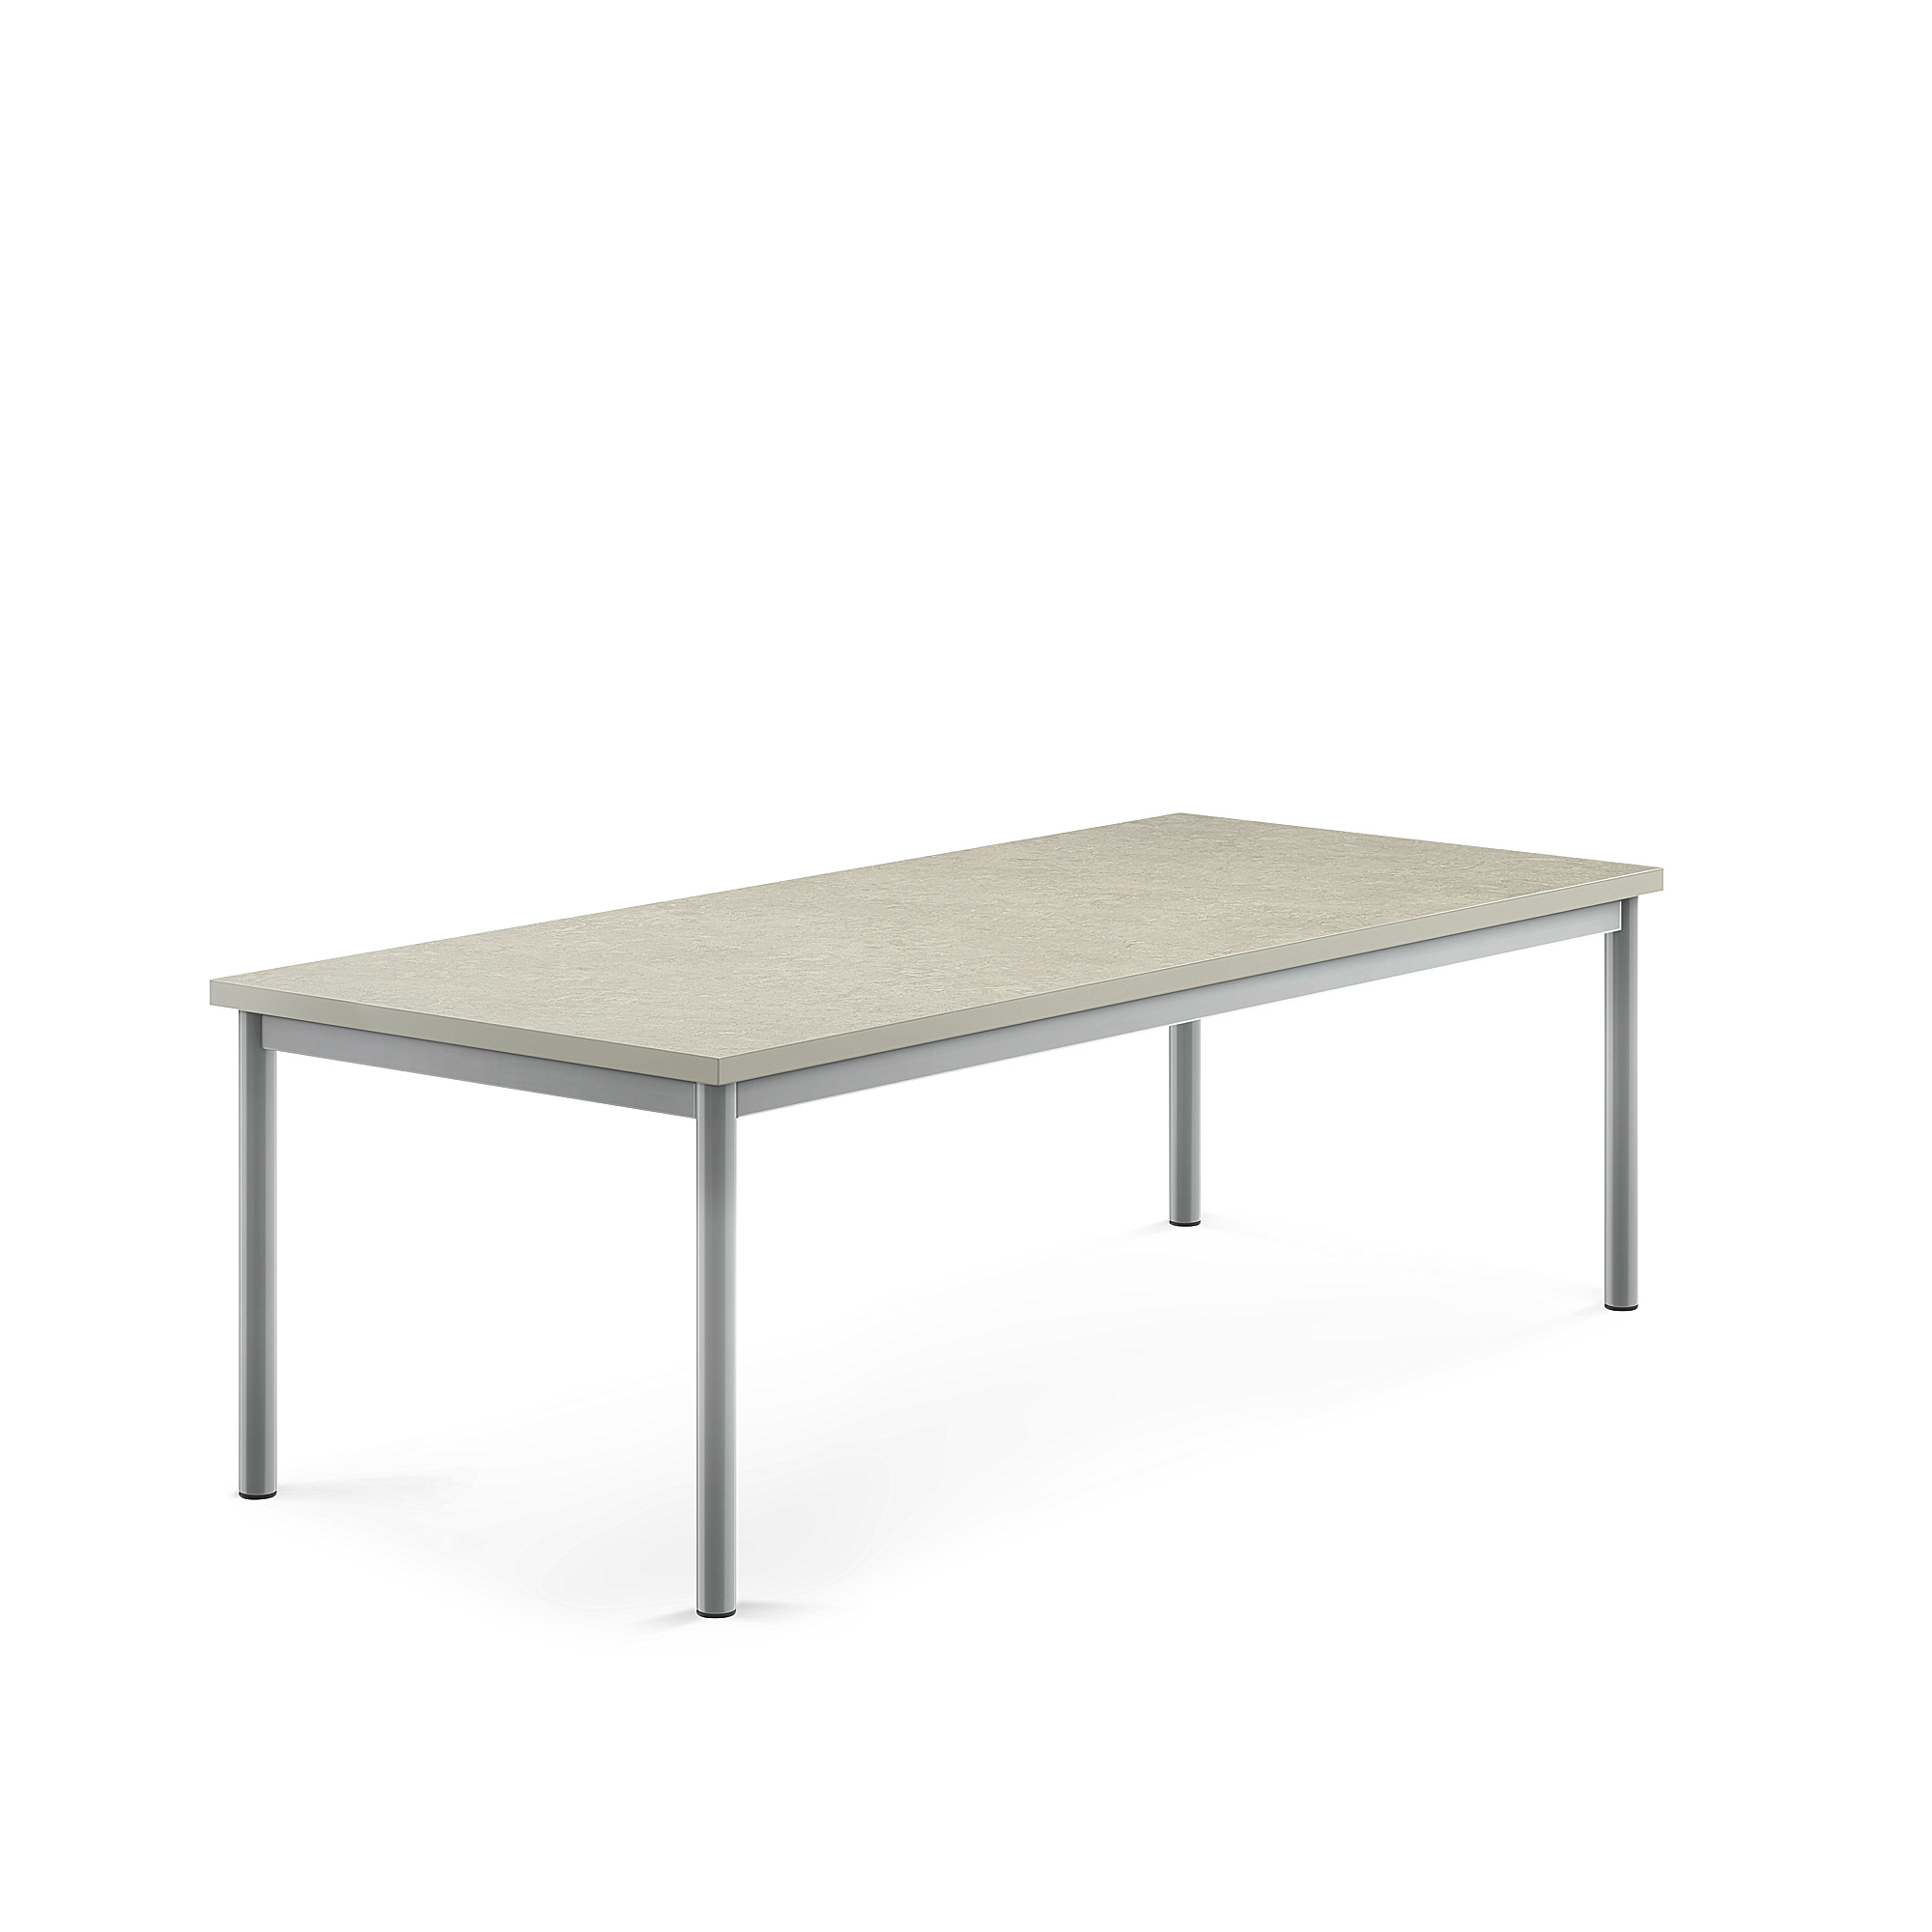 Stůl SONITUS, 1600x700x500 mm, stříbrné nohy, deska s linoleem, šedá